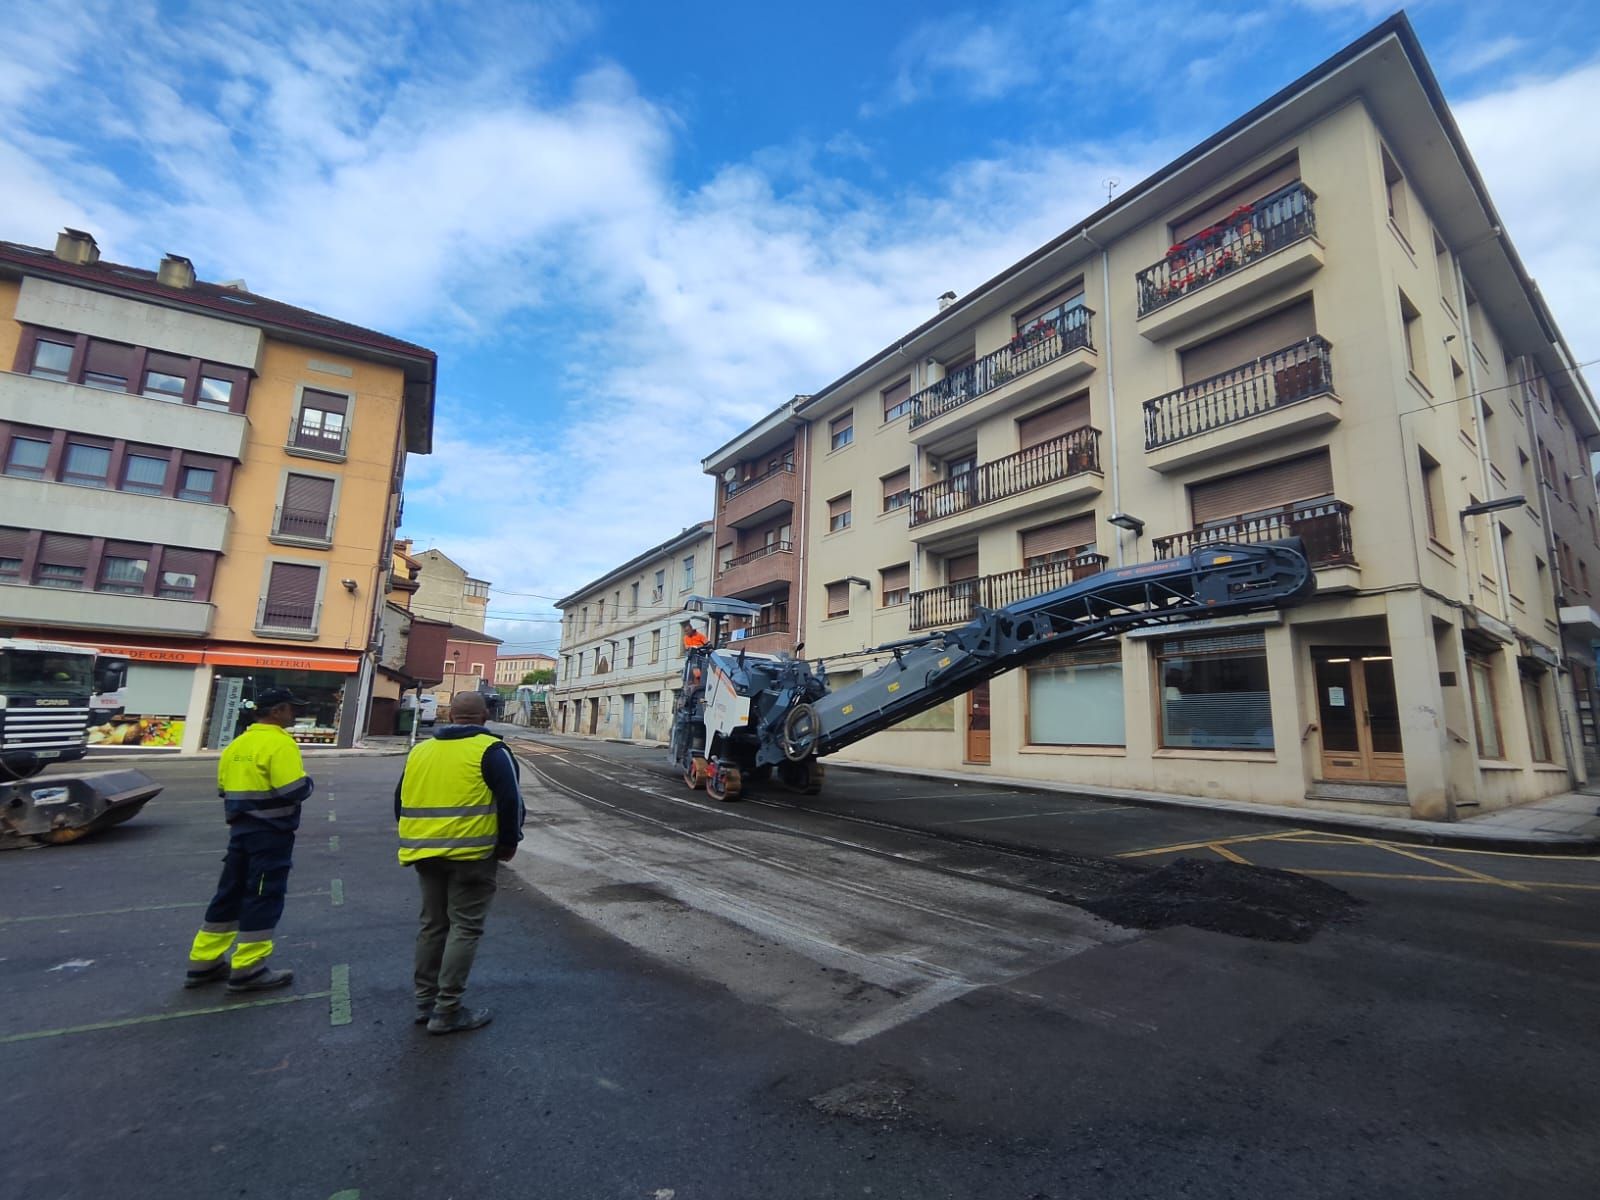 La villa moscona, abierta en canal: así avanza la obra para renovar el centro urbano